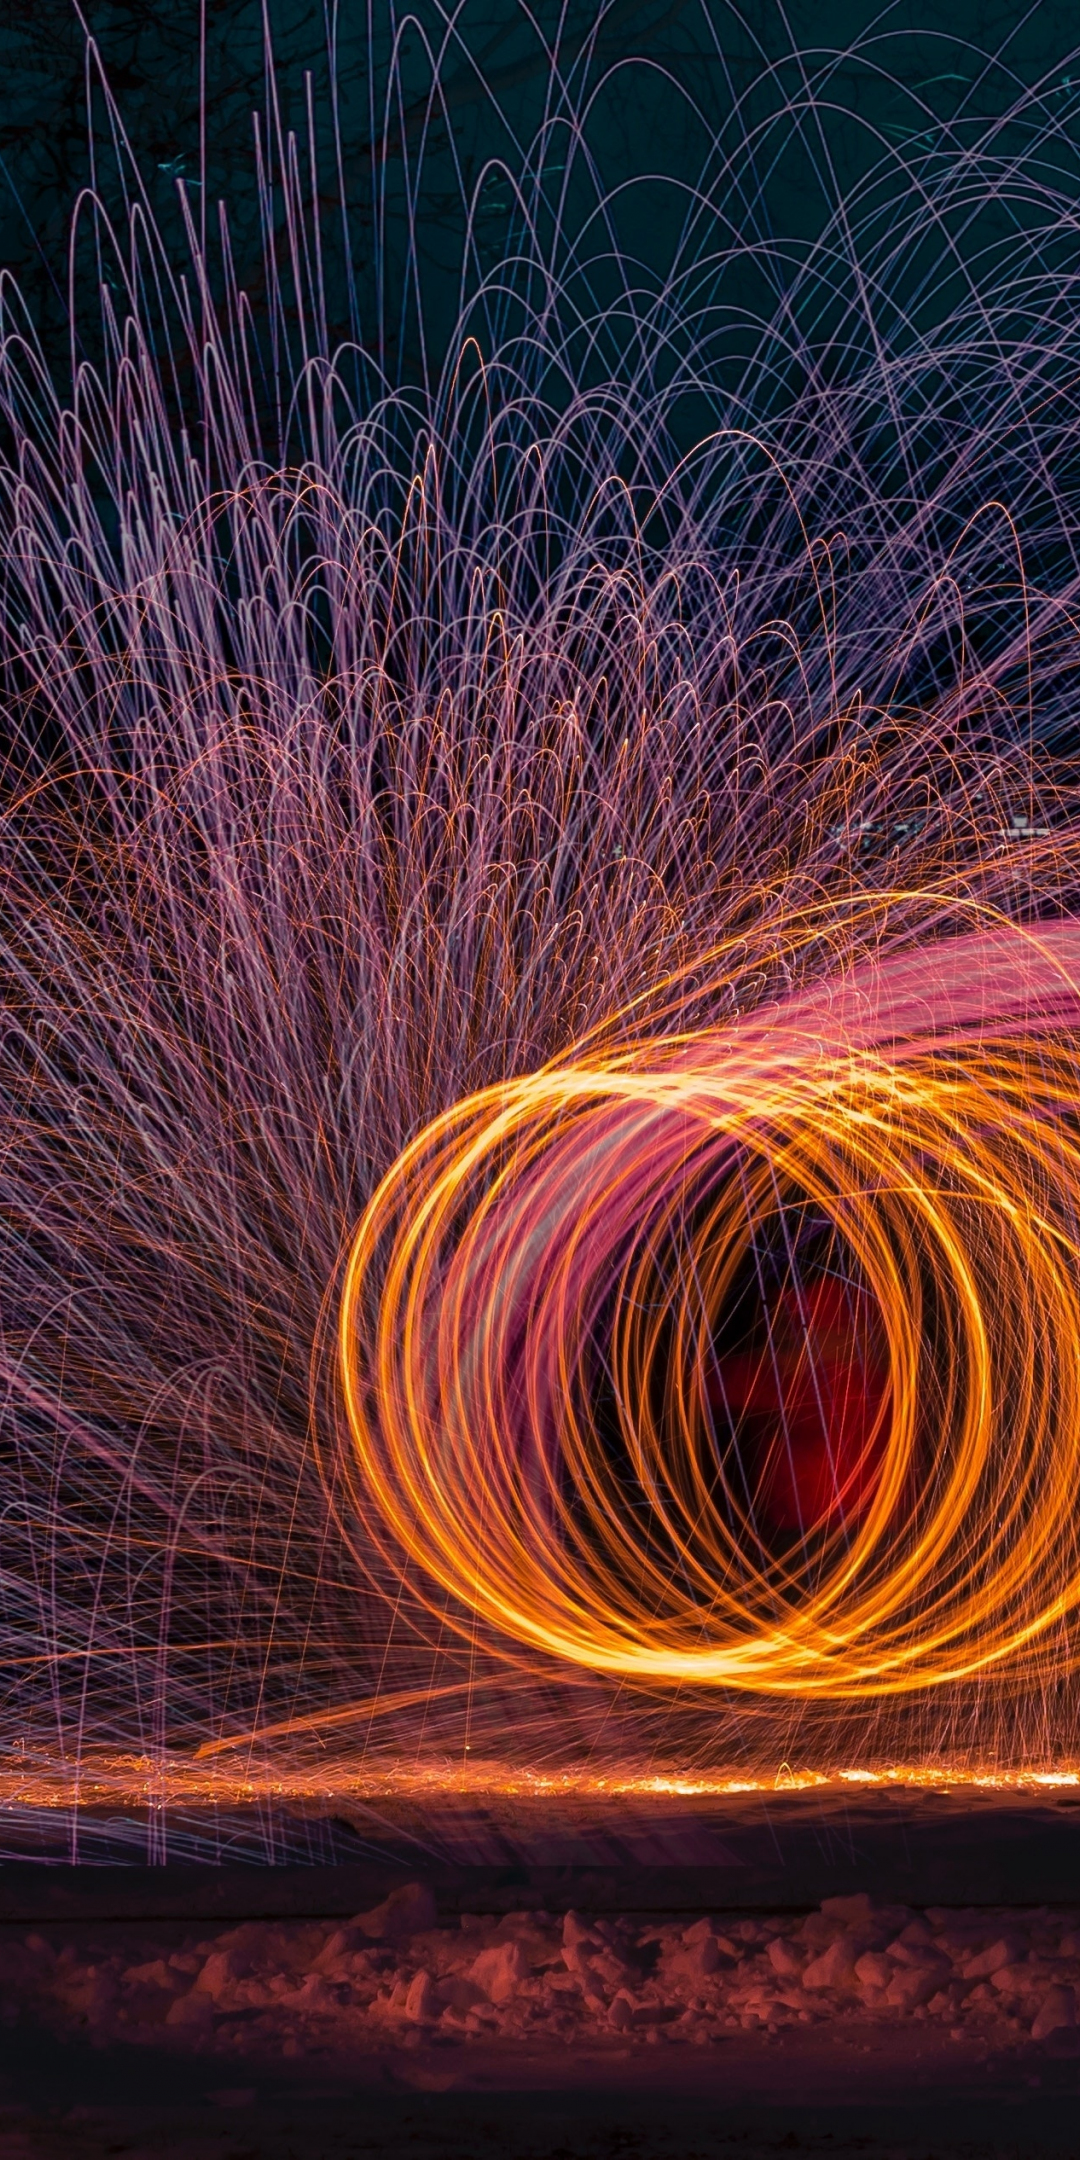 Fire juggling, night, fireworks, dark, 1080x2160 wallpaper